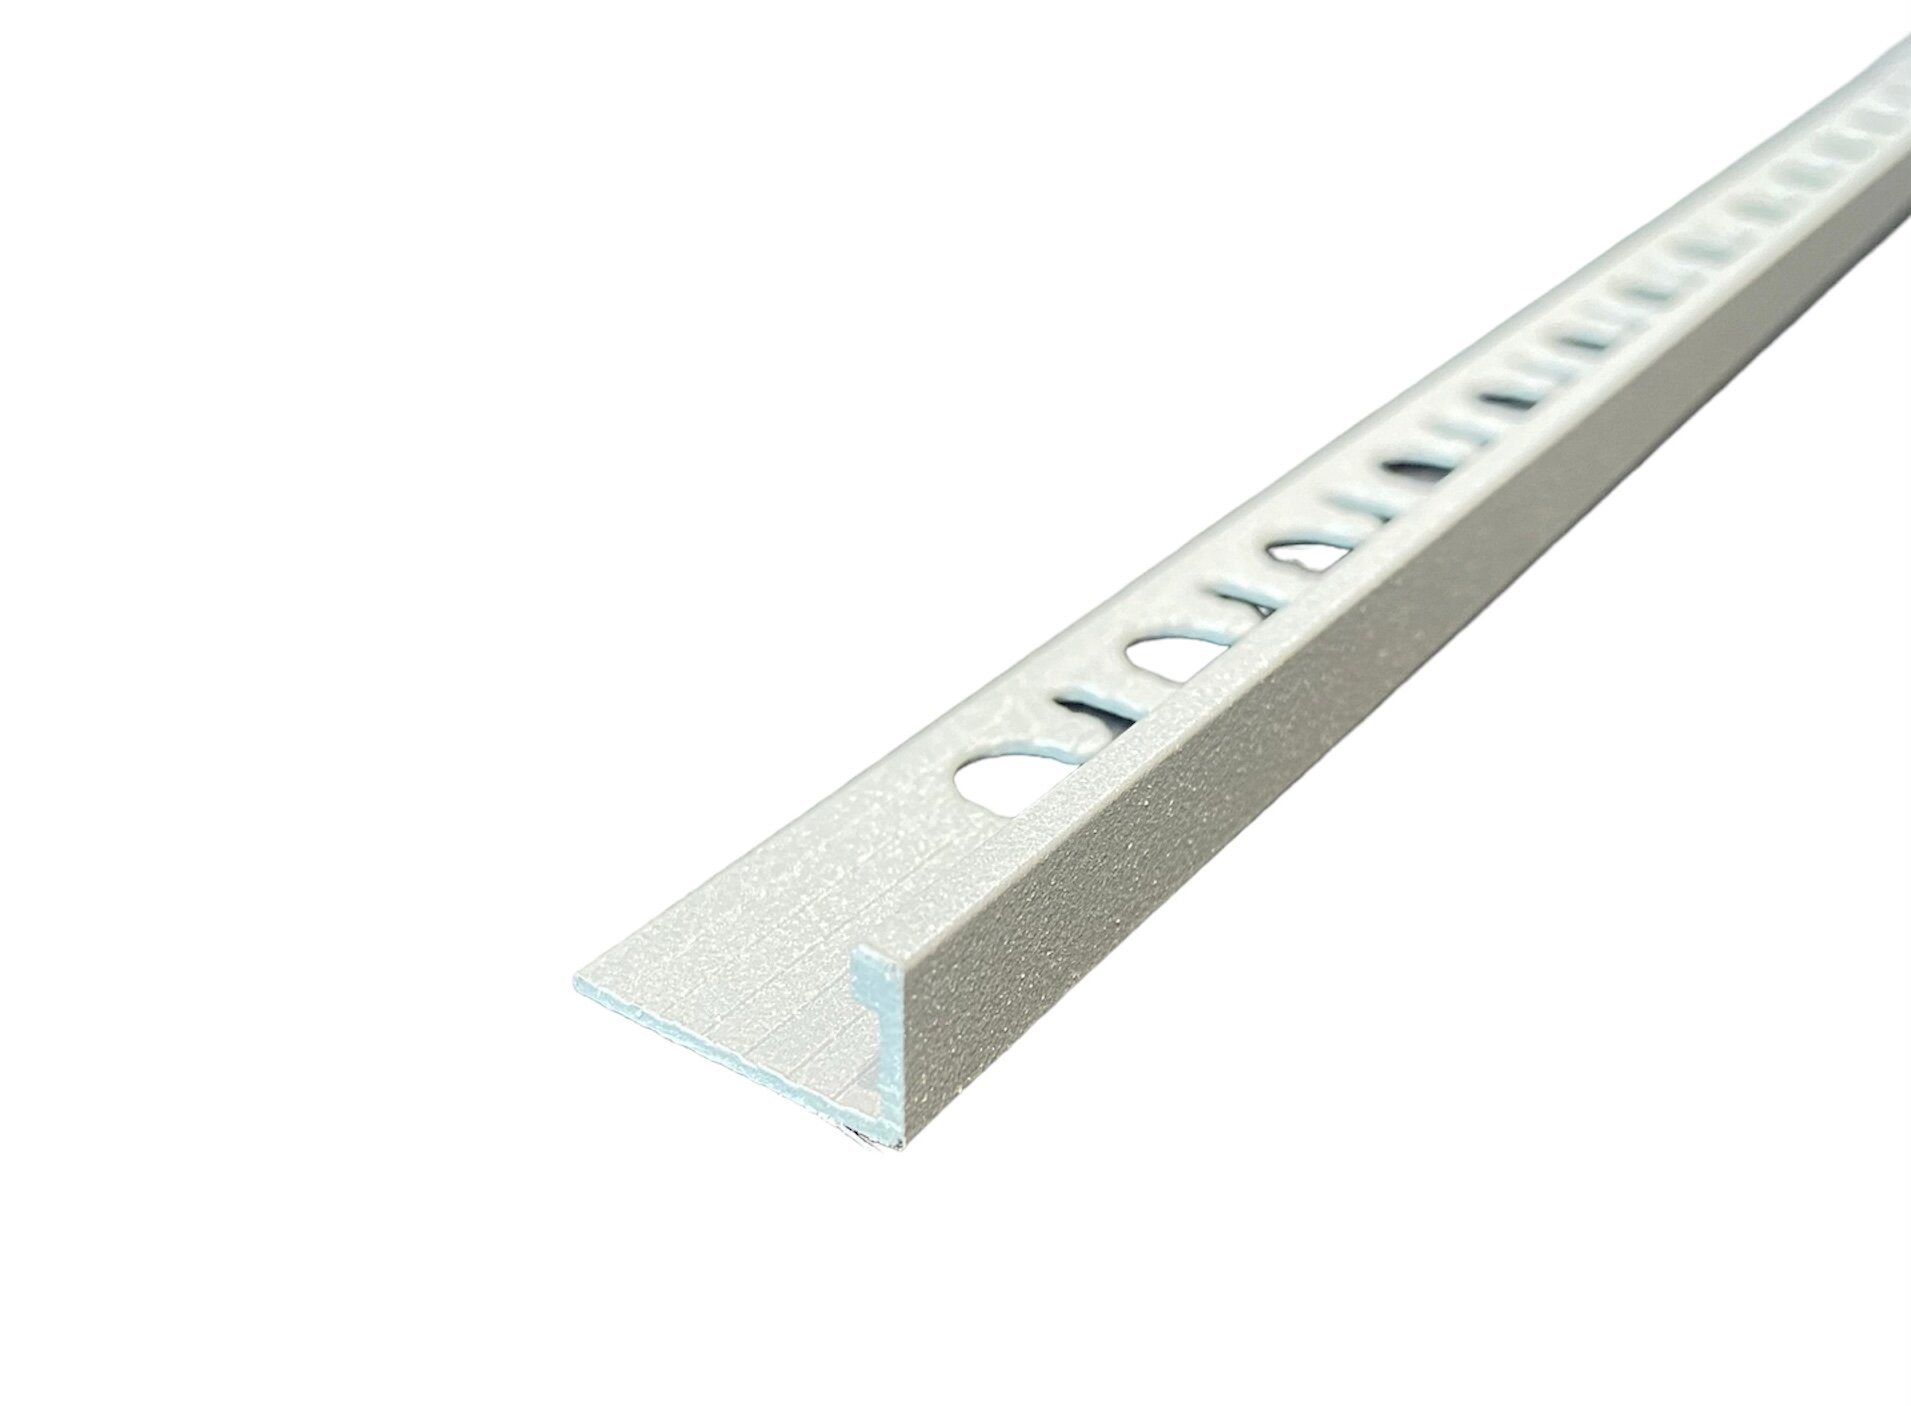 PROTERMINAL STONE LINE - Г-образный профиль эффект камня алюминиевый 10 мм длина 2.7 метра. PTA 10-SL13